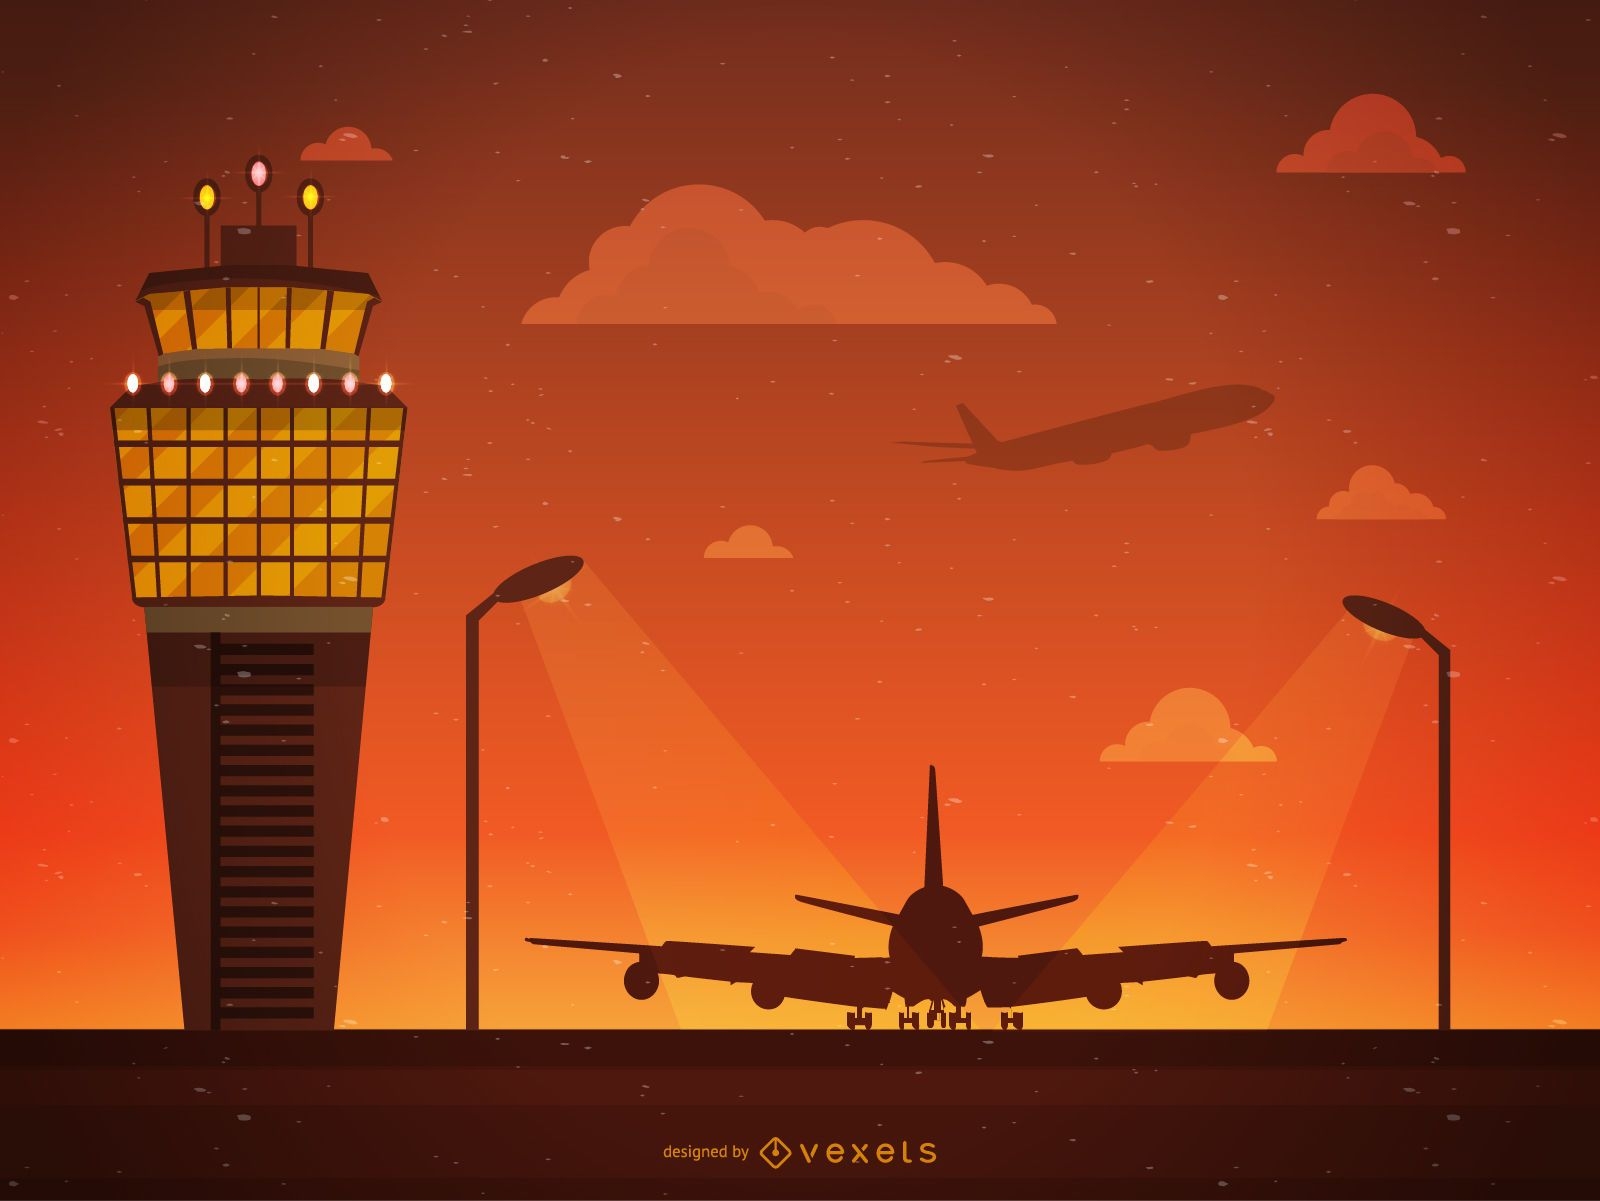 Ilustração da torre de controle do aeroporto